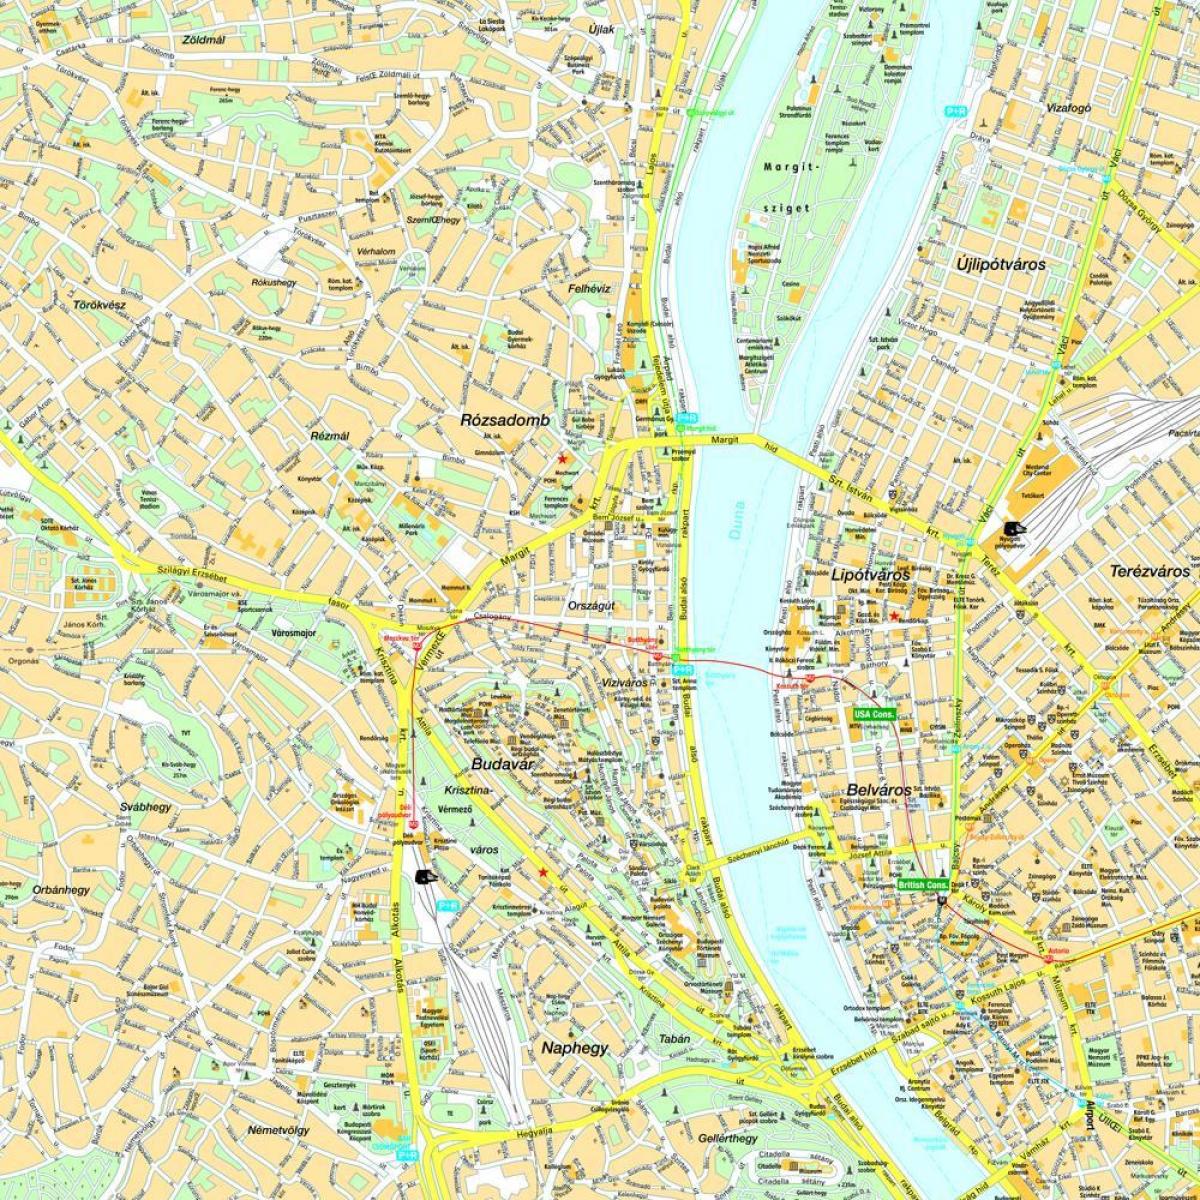 peta budapest dan kawasan sekitarnya